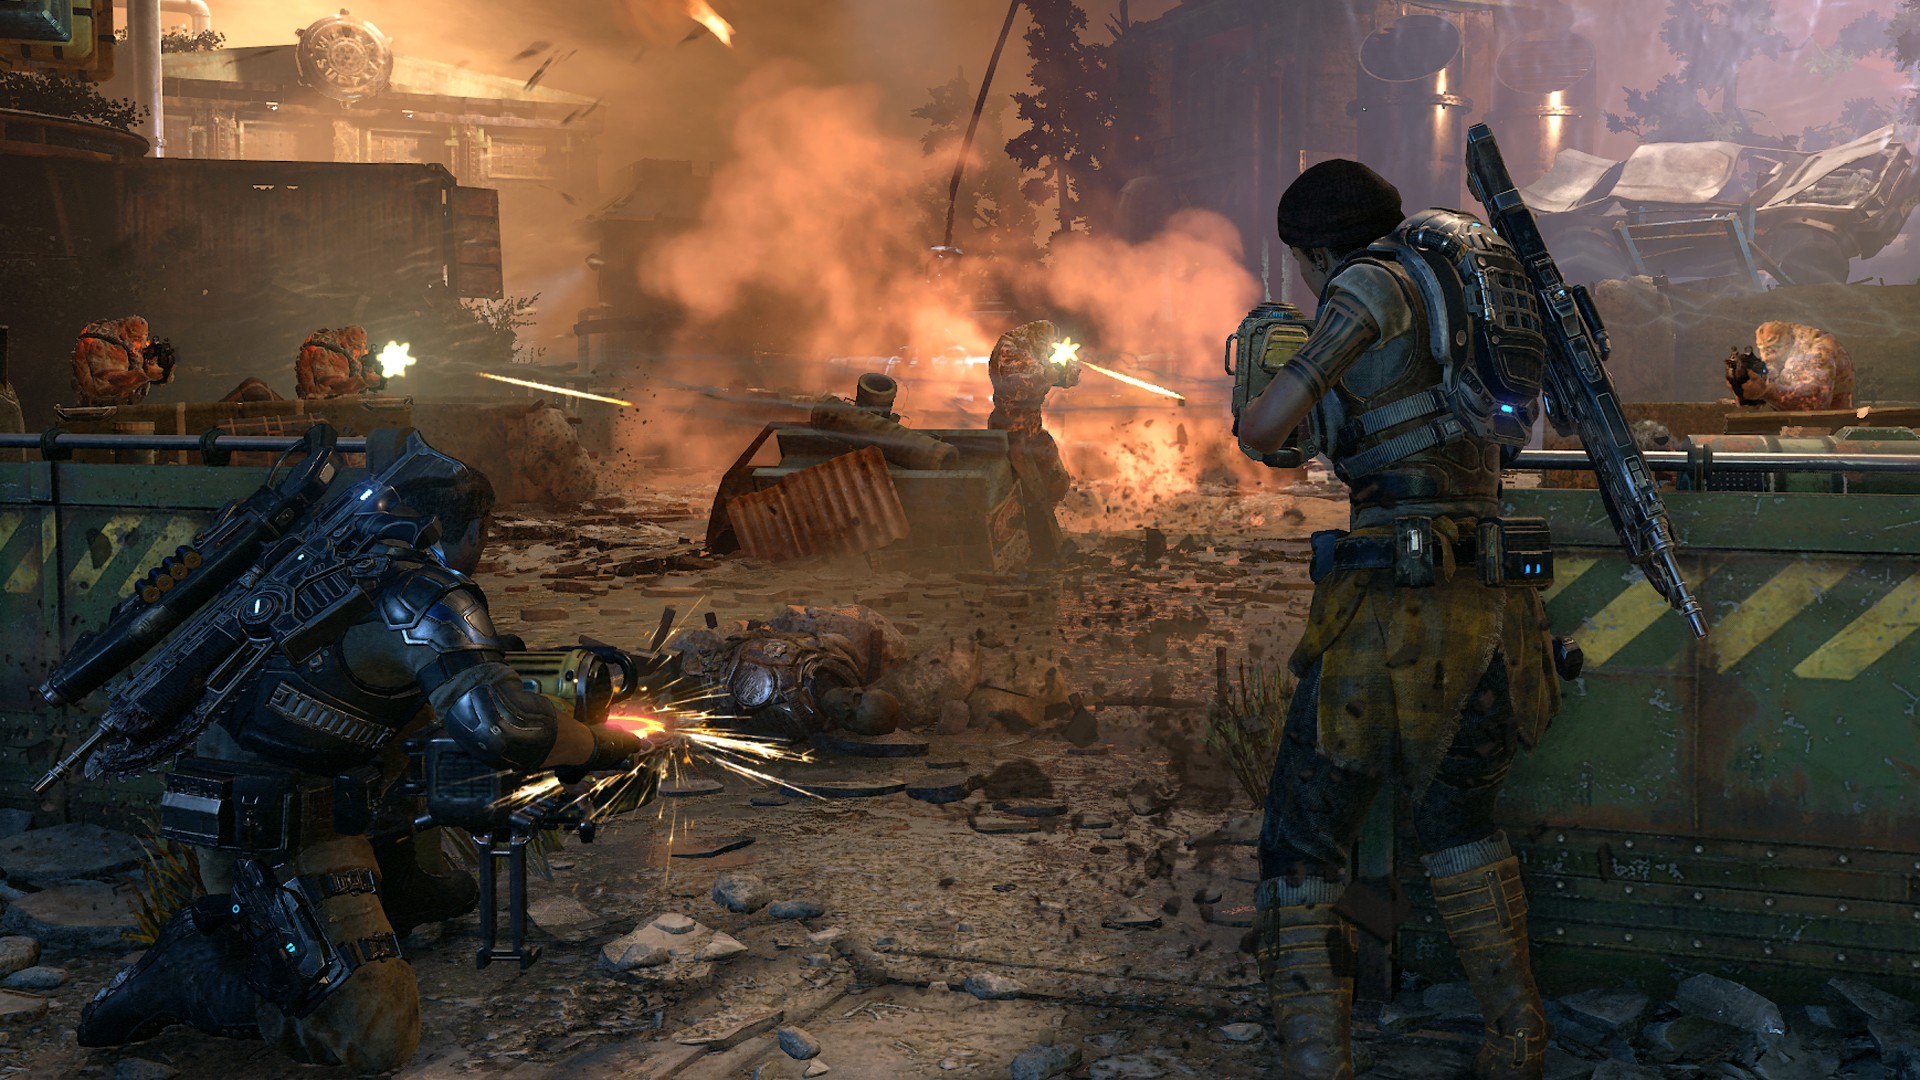 Геймплей мультиплеера Gears of War 4 попал в сеть